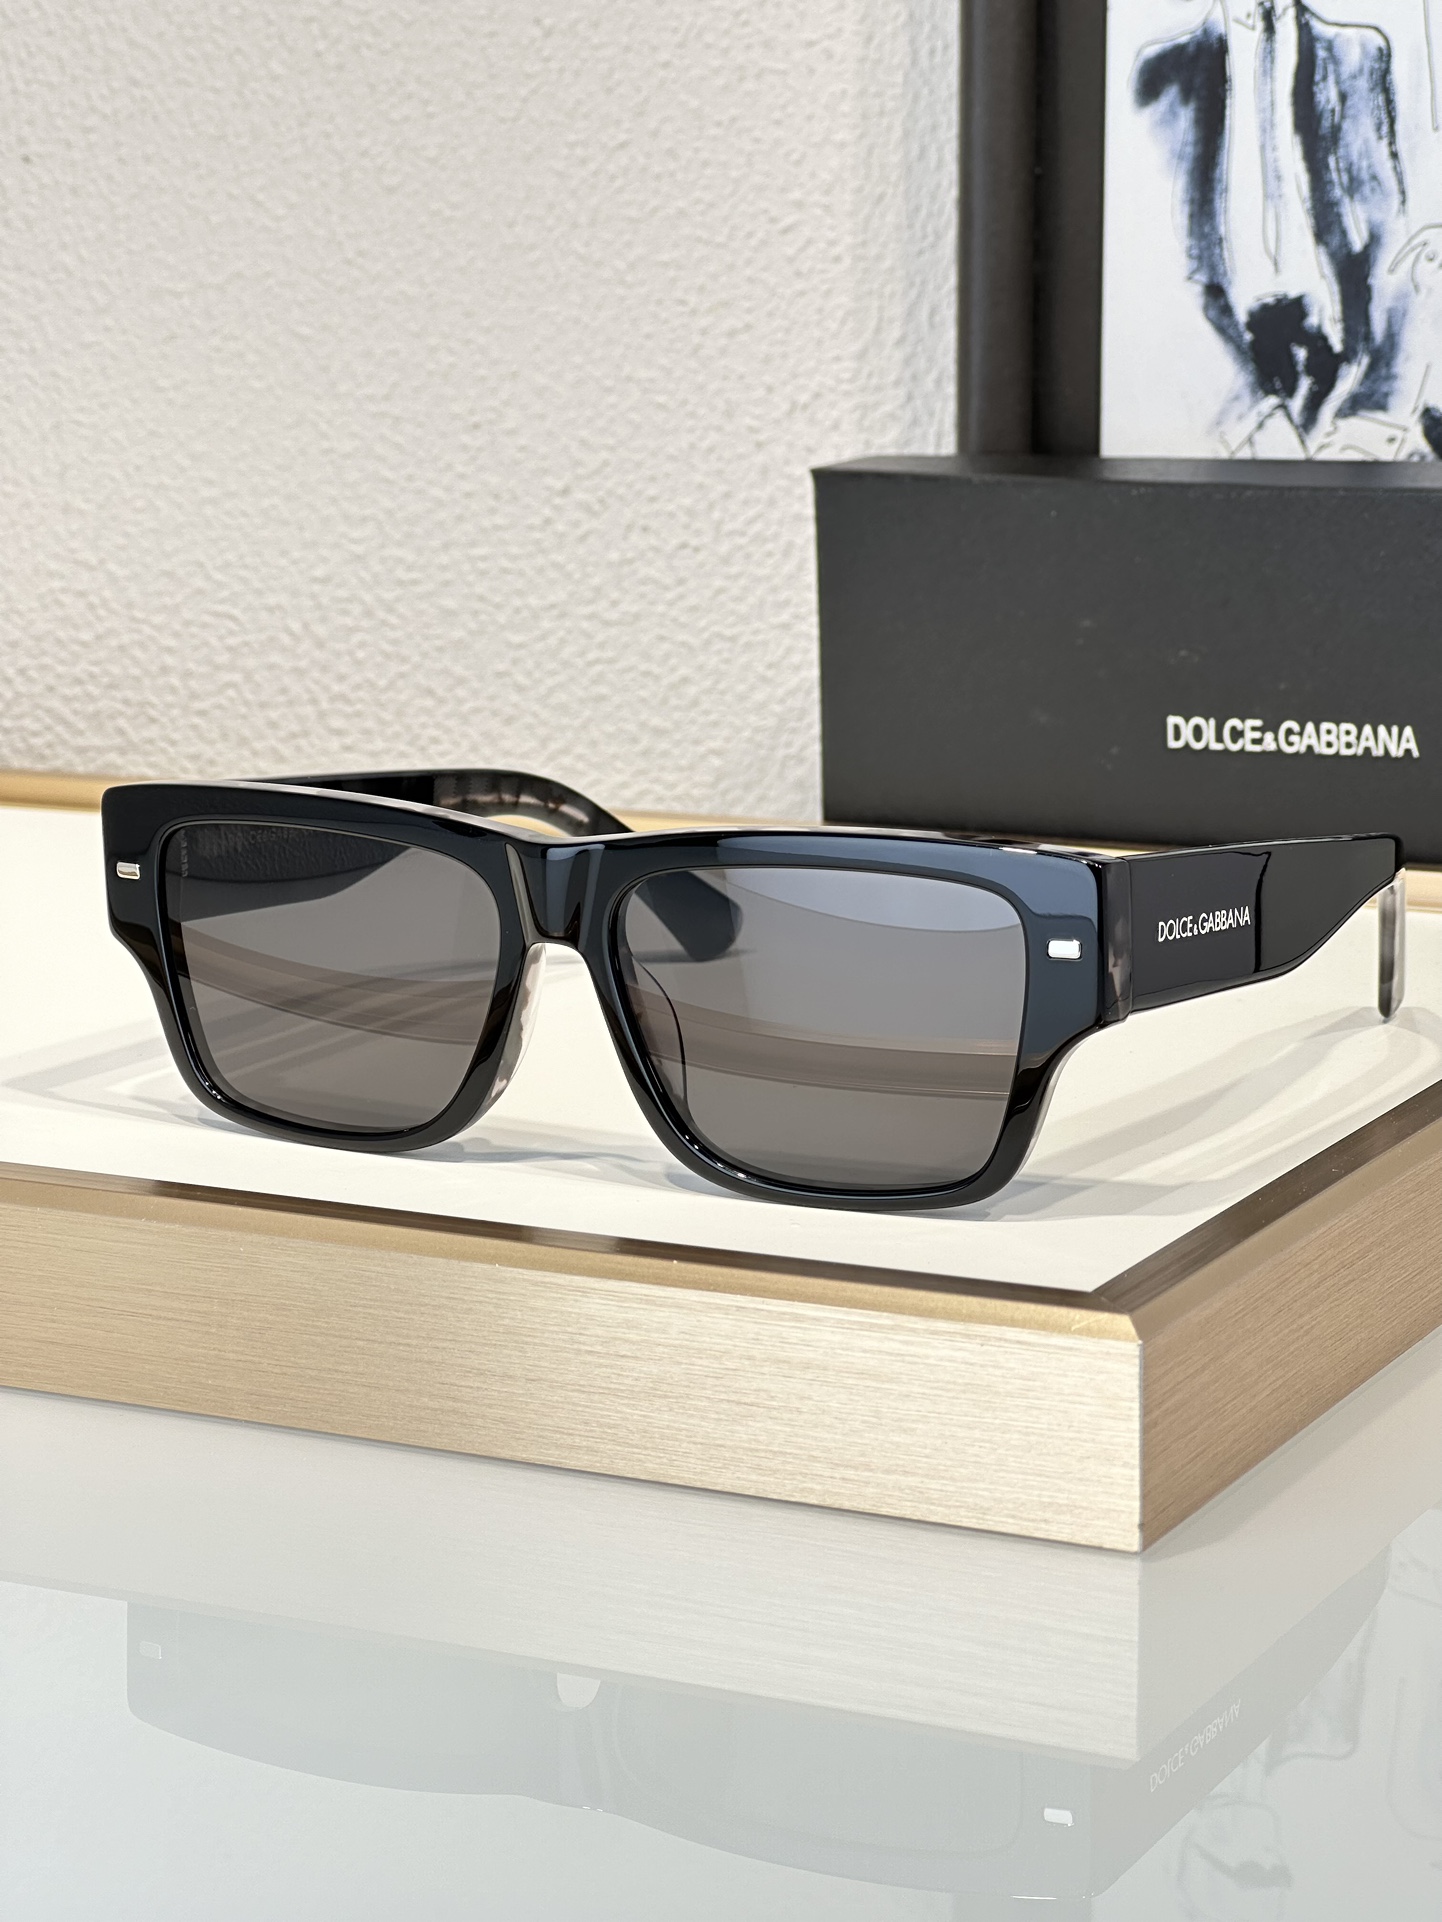 Find replica
 Dolce & Gabbana Sunglasses